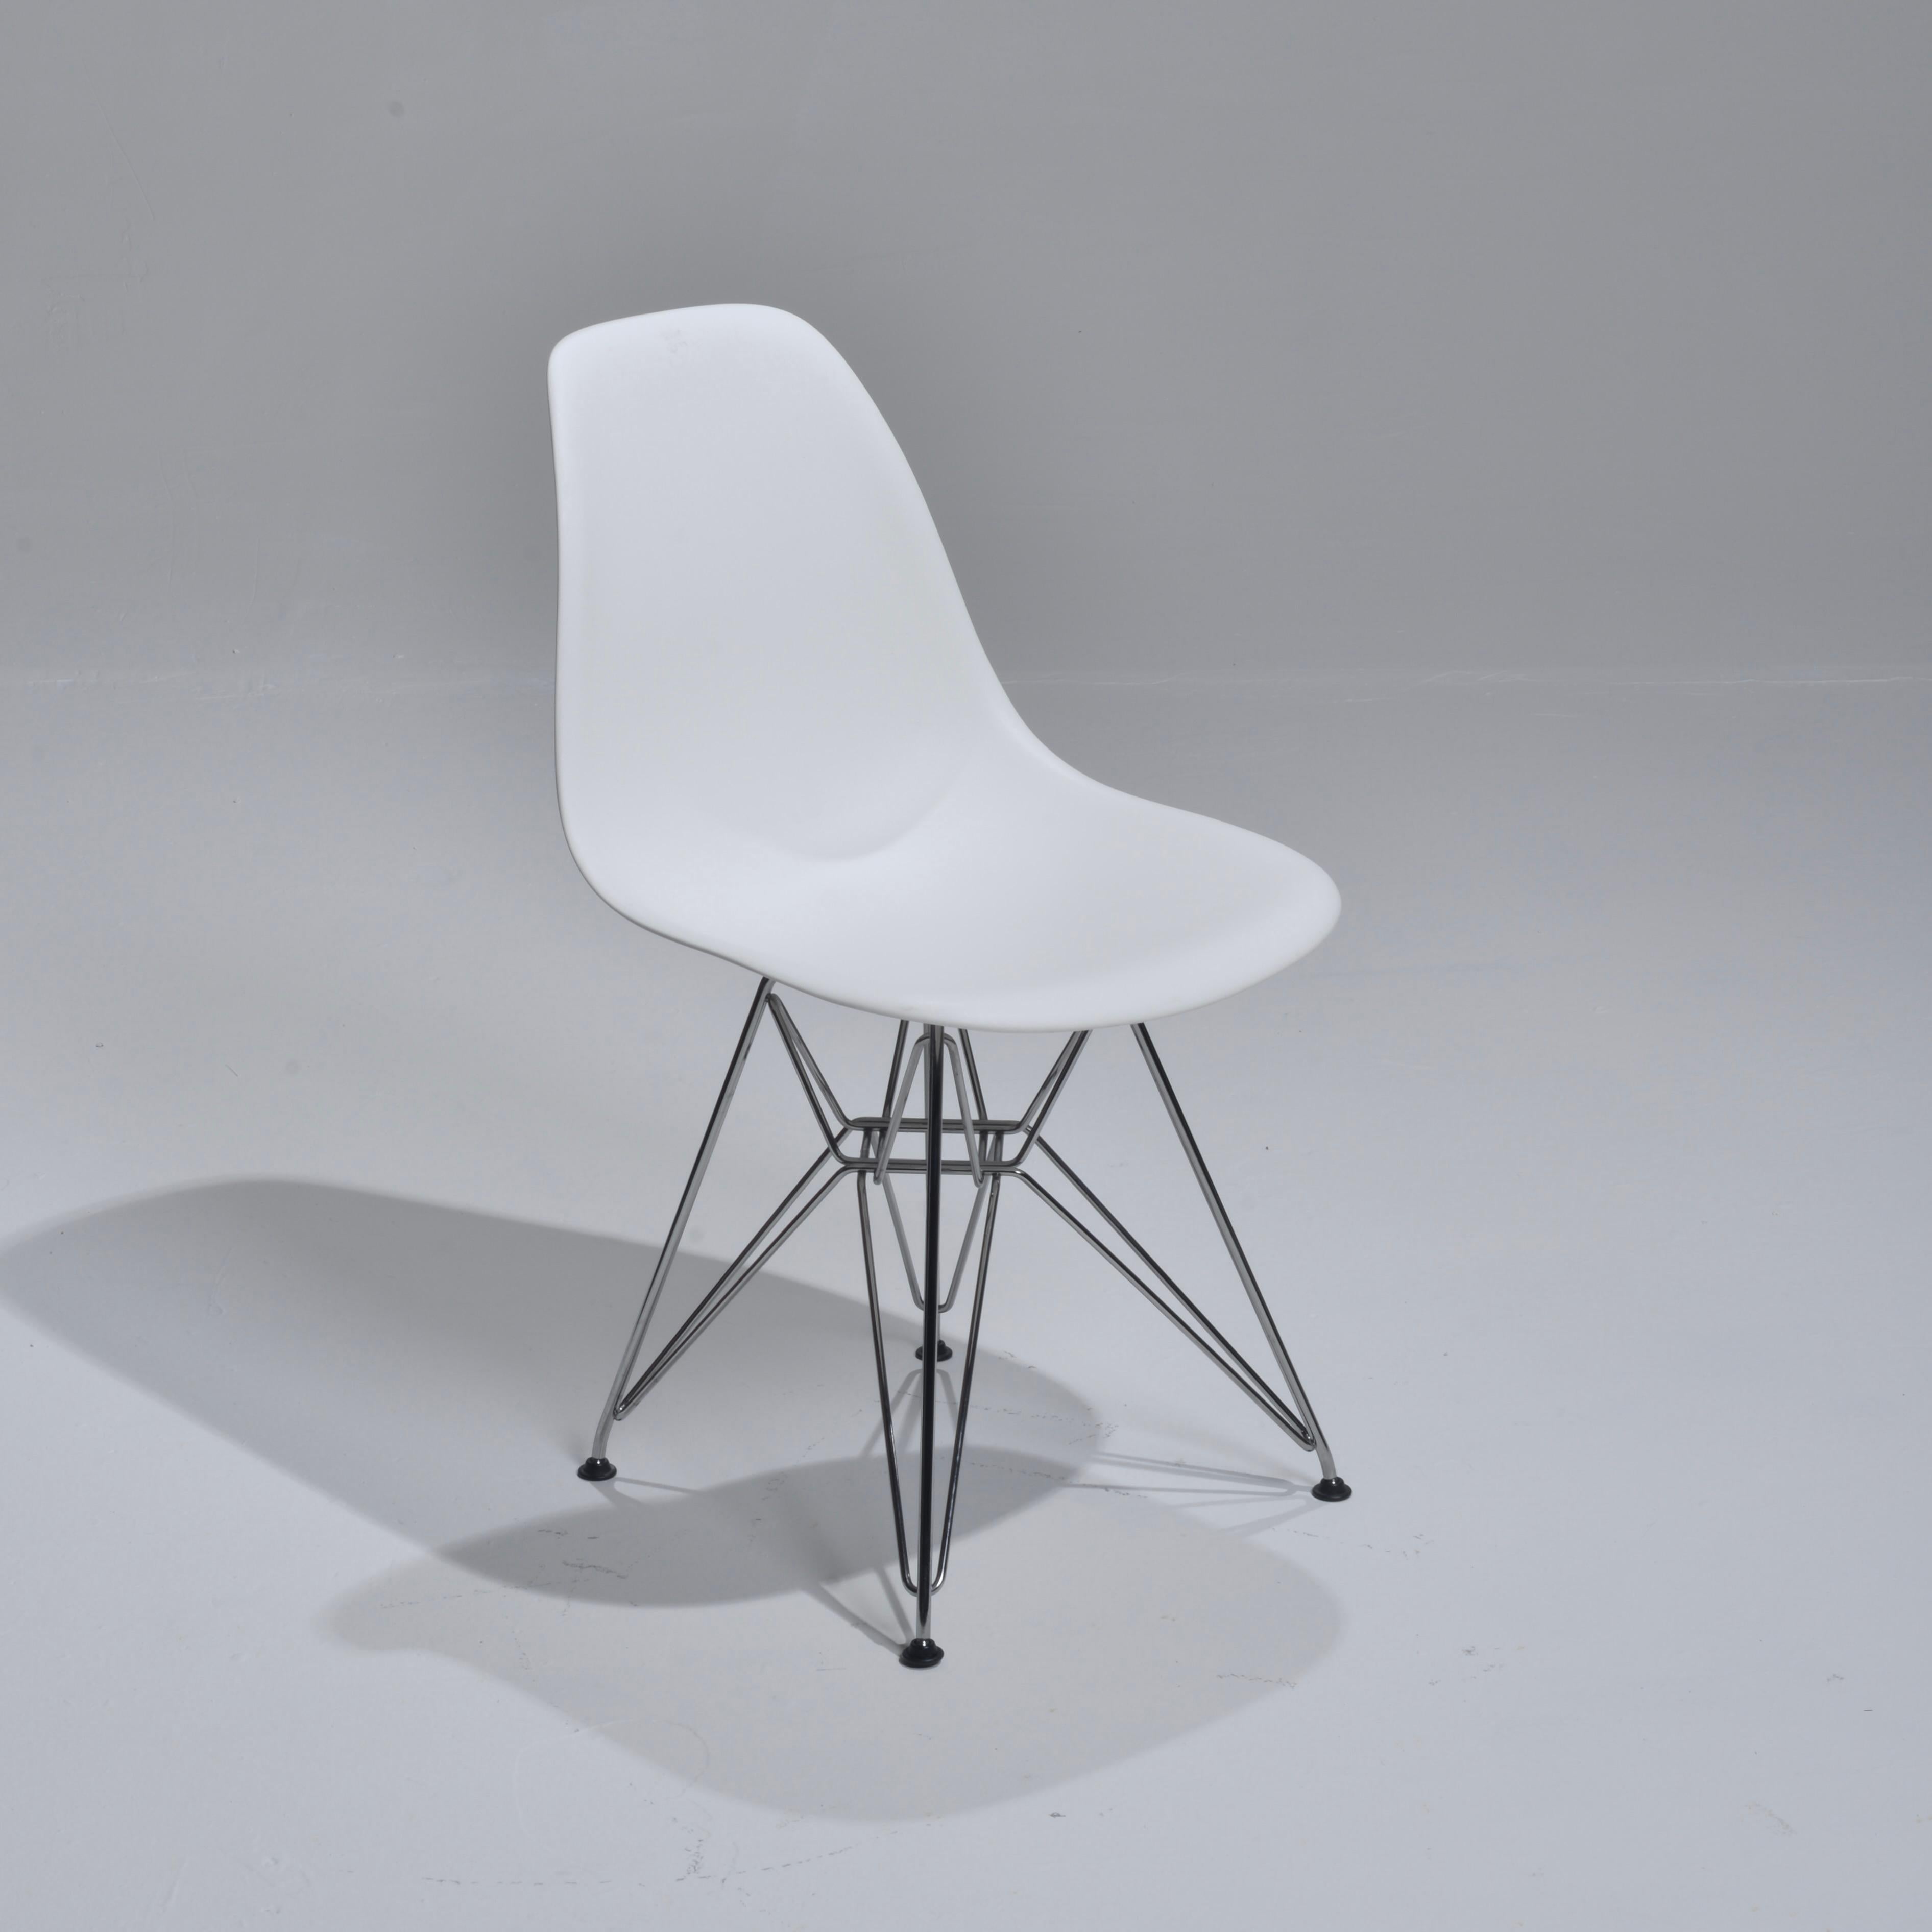 Nous avons 65 de ces chaises originales Herman Miller en polypropylène moulé conçues par Ray et Charle Eames. Nous avons 65 chaises blanches.
 